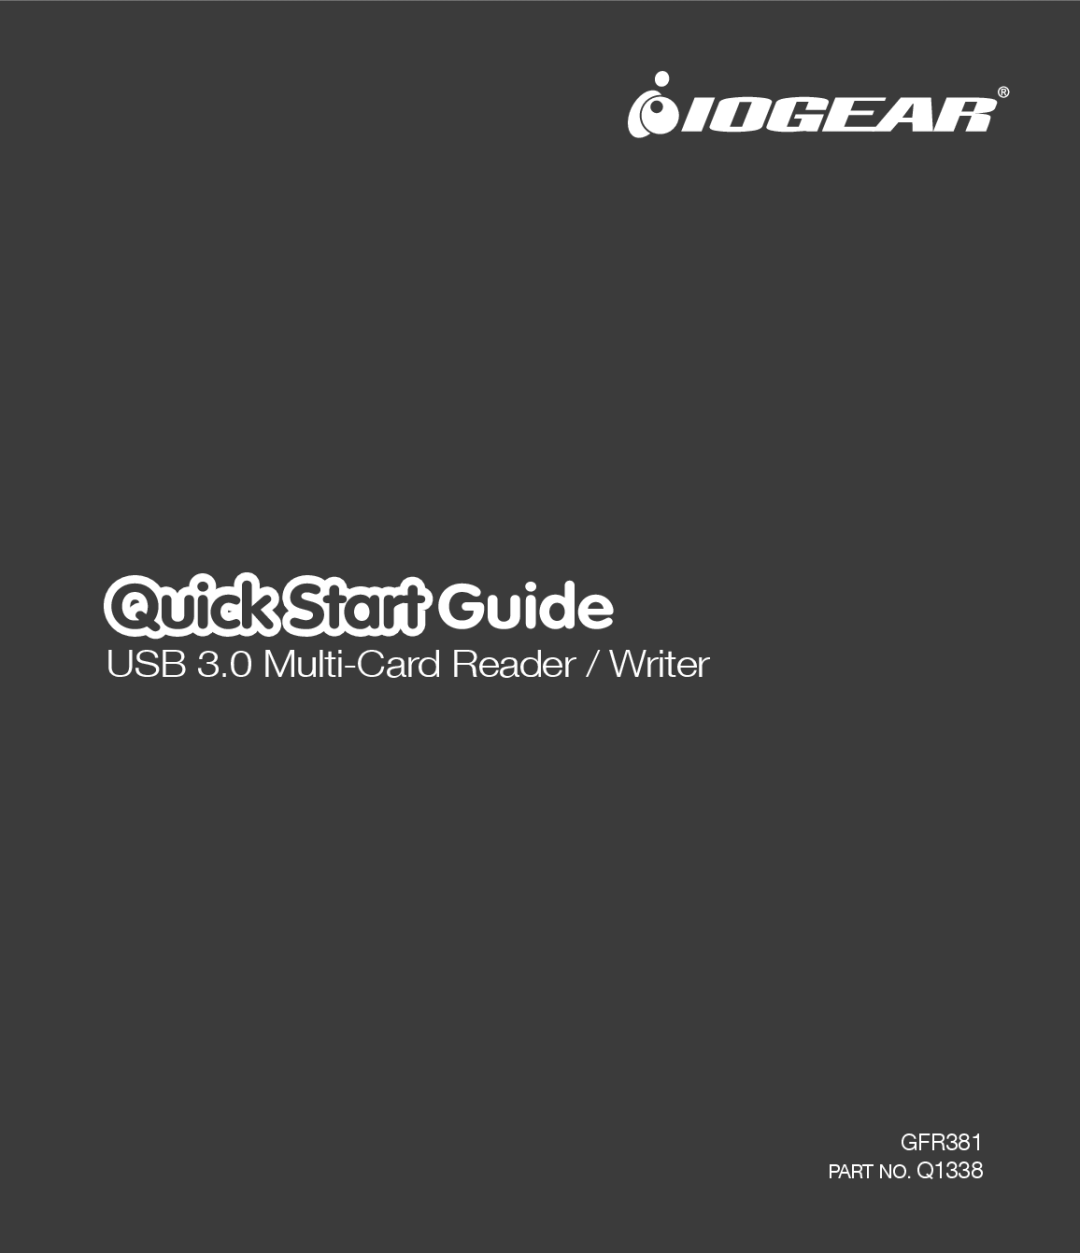 IOGear quick start Quick Start Guide, USB 3.0 Multi-Card Reader / Writer, GFR381 PART NO. Q1338 